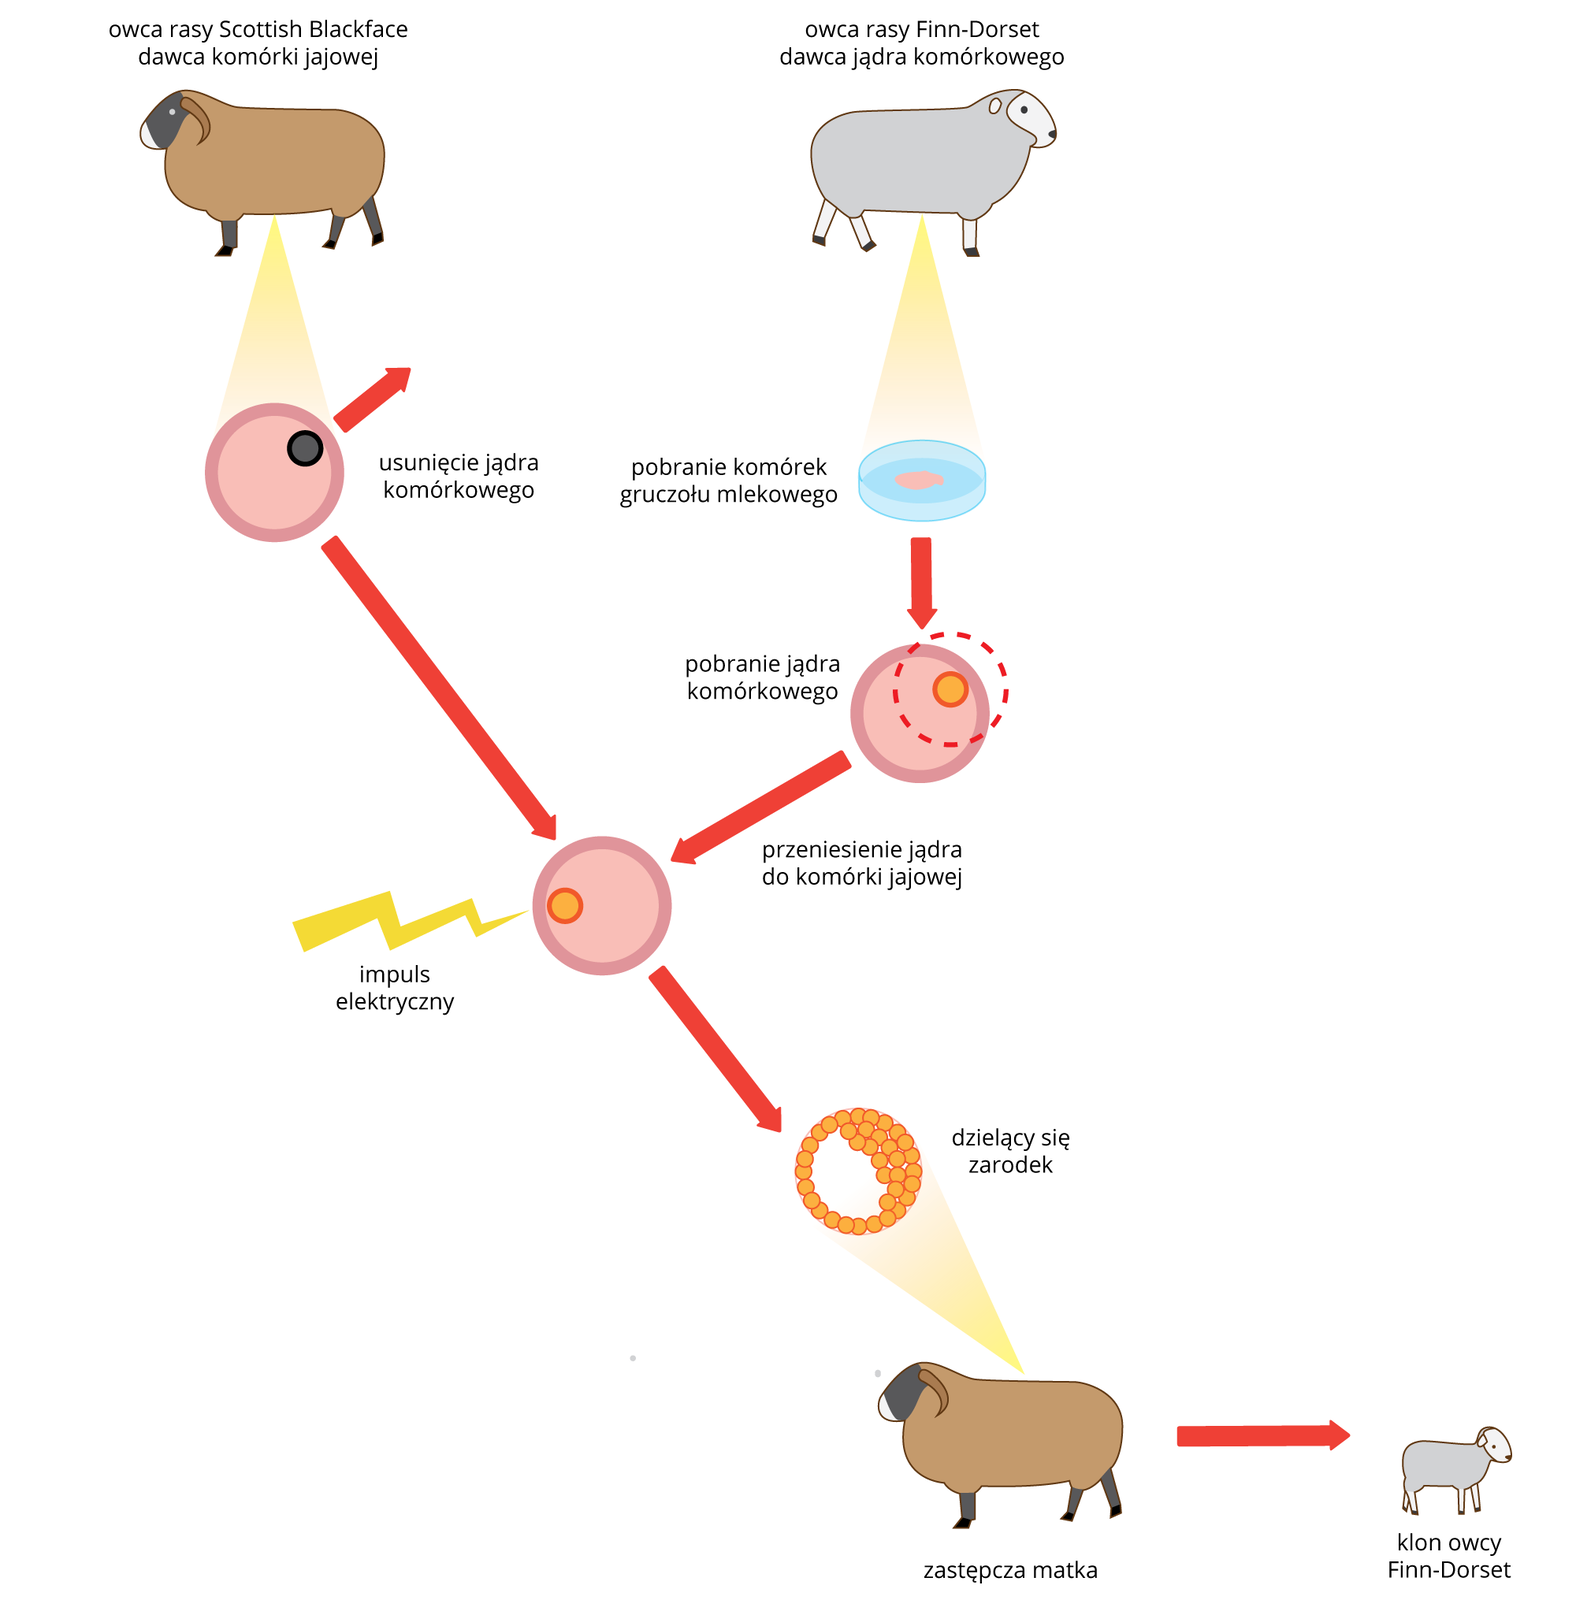 Schemat przedstawia sposób przeprowadzenia klonowania. U góry dwie owce różnych ras, brązowa i szara. Od brązowej pobrano komórkę jajową, od szarej somatyczną i dokonano transplantacji jądra komórkowego. Przy komórce po transplantacji żółta błyskawica, oznaczająca impuls elektryczny. Poniżej pomarańczowy zarodek. Strzałka wskazuje umieszczenie go w macicy brązowej matki zastępczej. Wynik: białe jagnię po prawej.